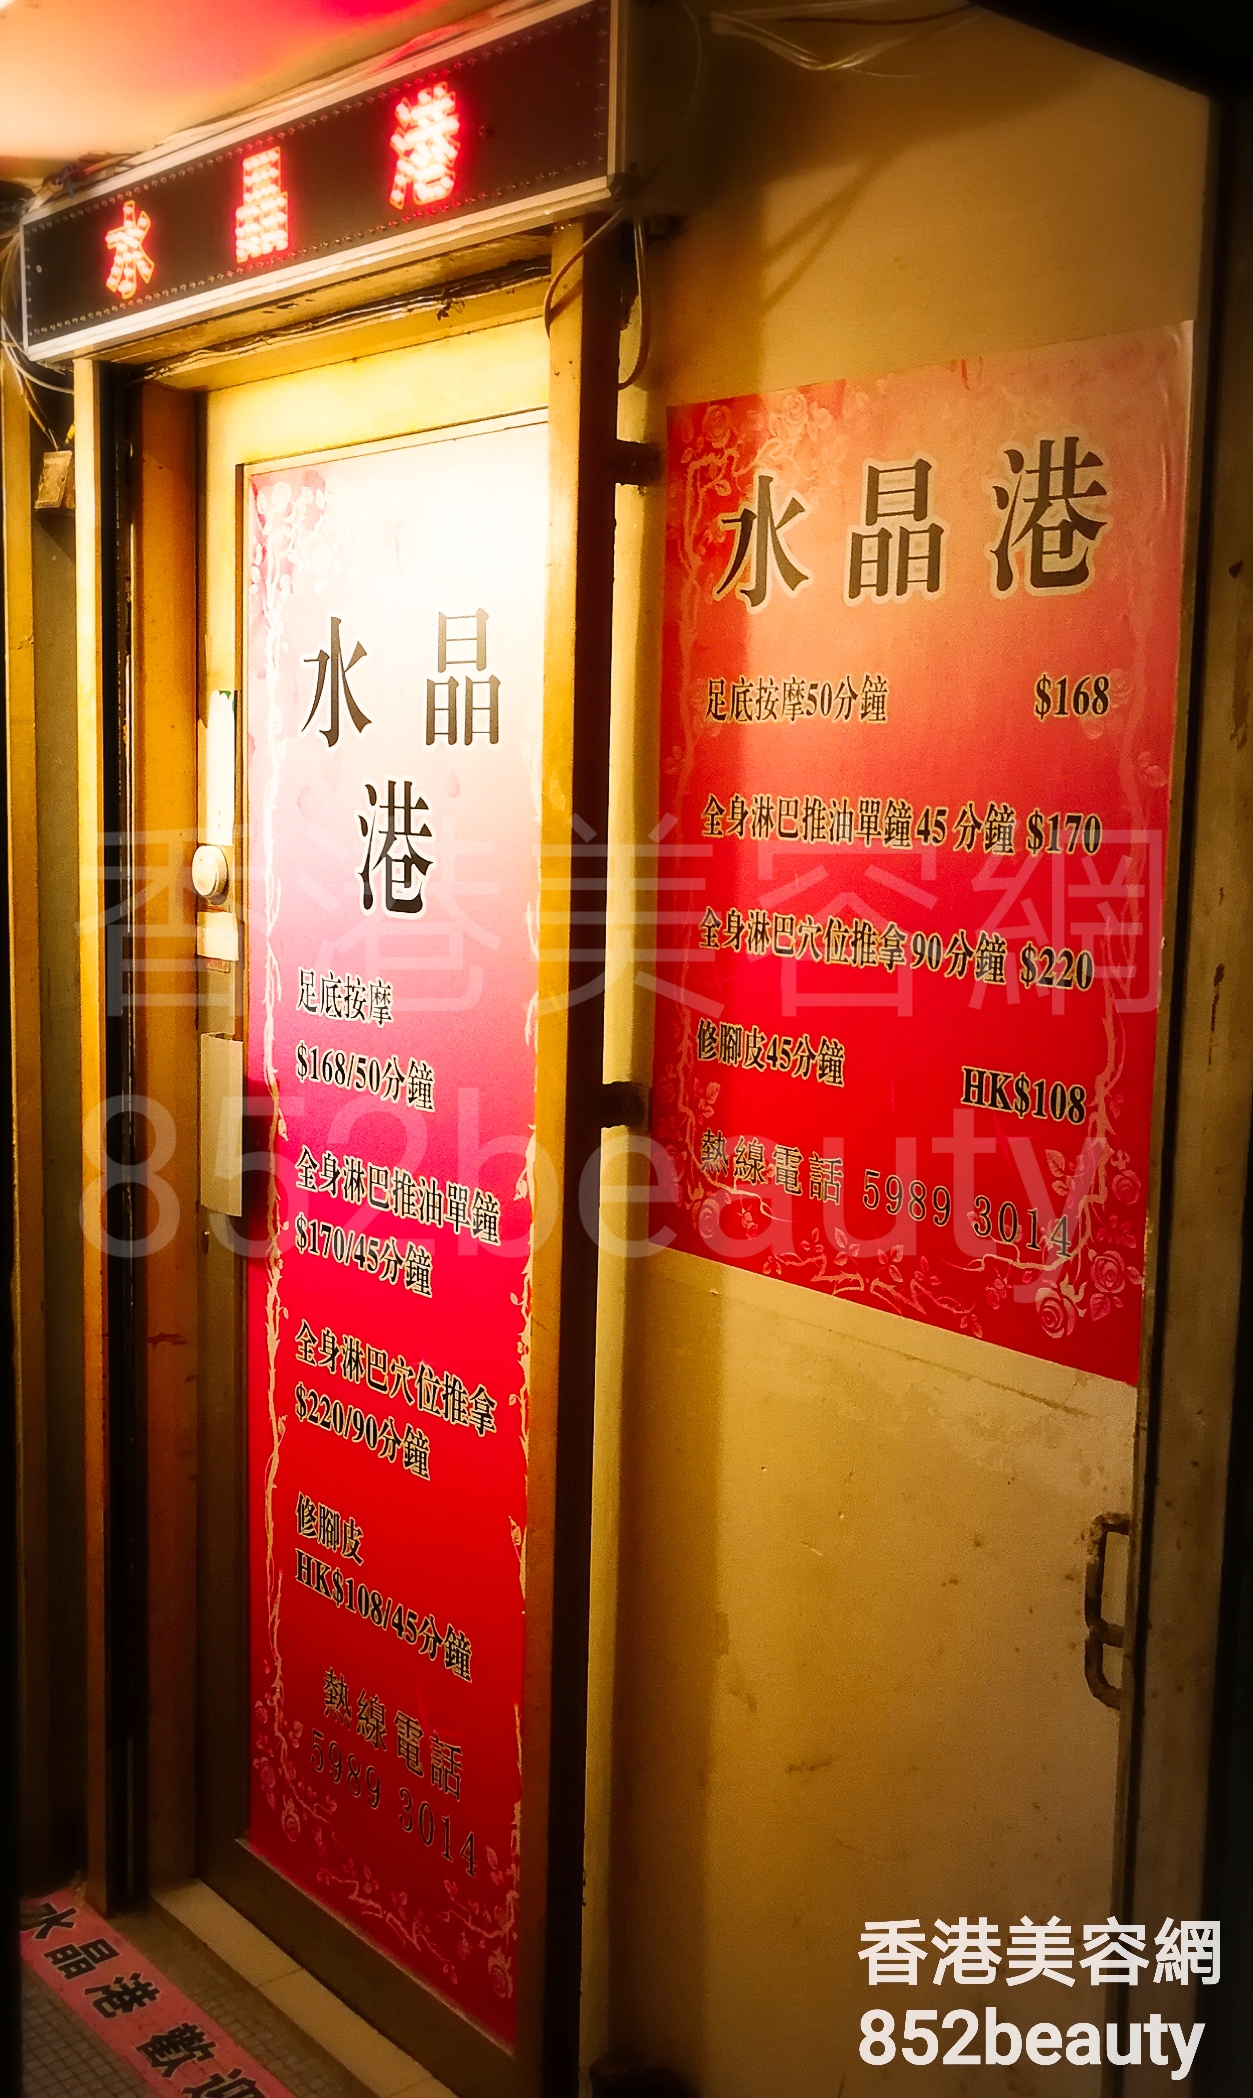 Beauty Salon: 水晶港